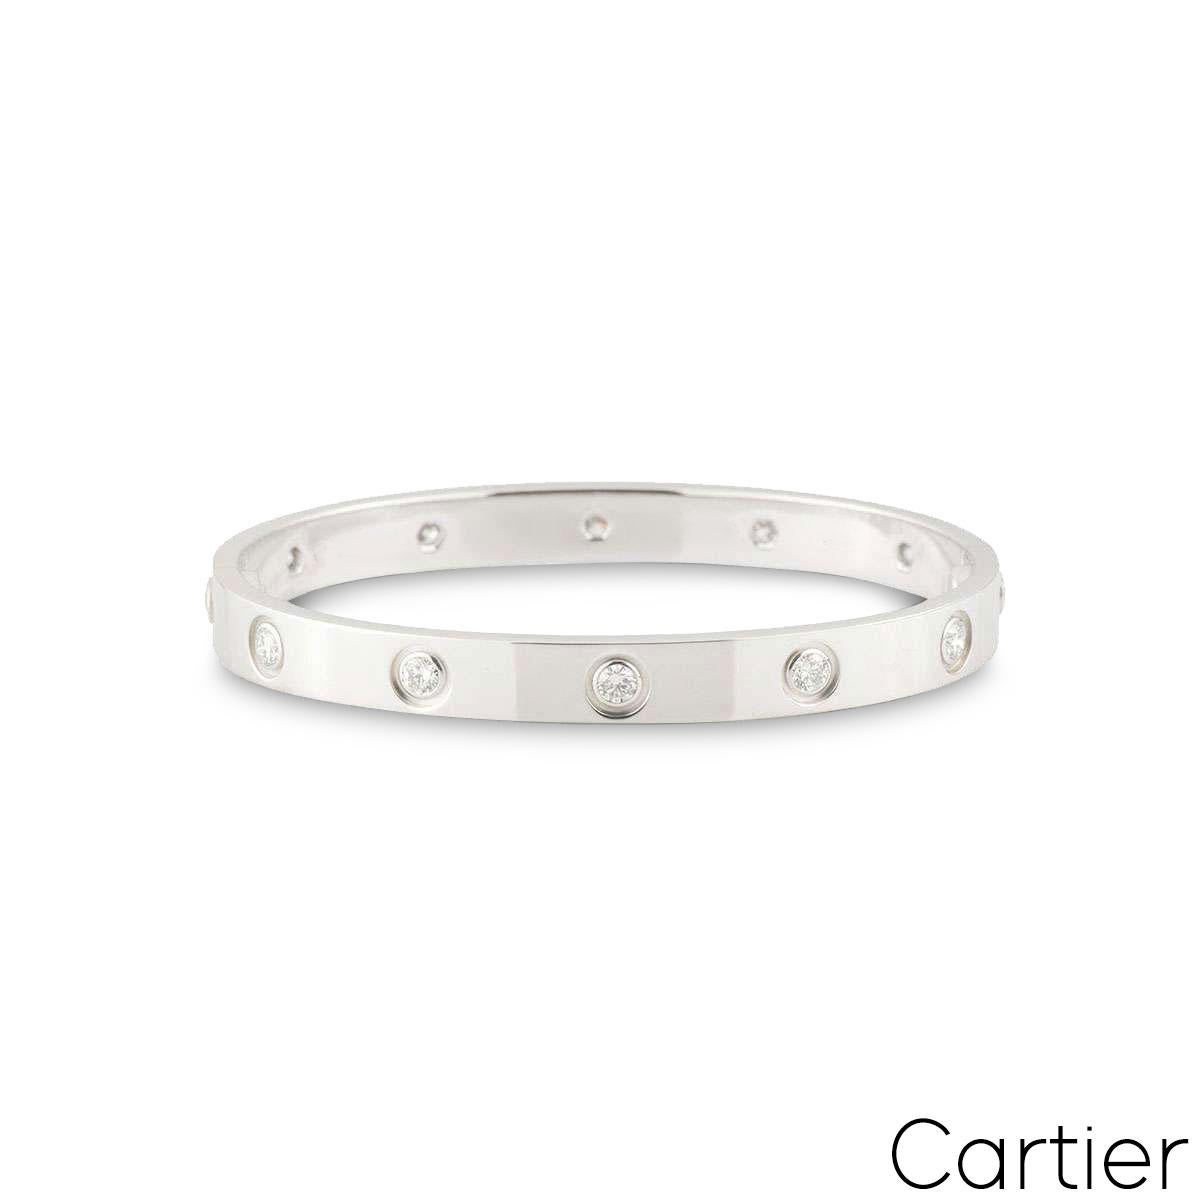 Un bracelet Cartier en or blanc 18 carats plein de diamants de la collection Love. Le bracelet est serti de 10 diamants ronds de taille brillant circulant sur le bord extérieur dans un sertissage de type rubover. Le bracelet est de taille 17 et